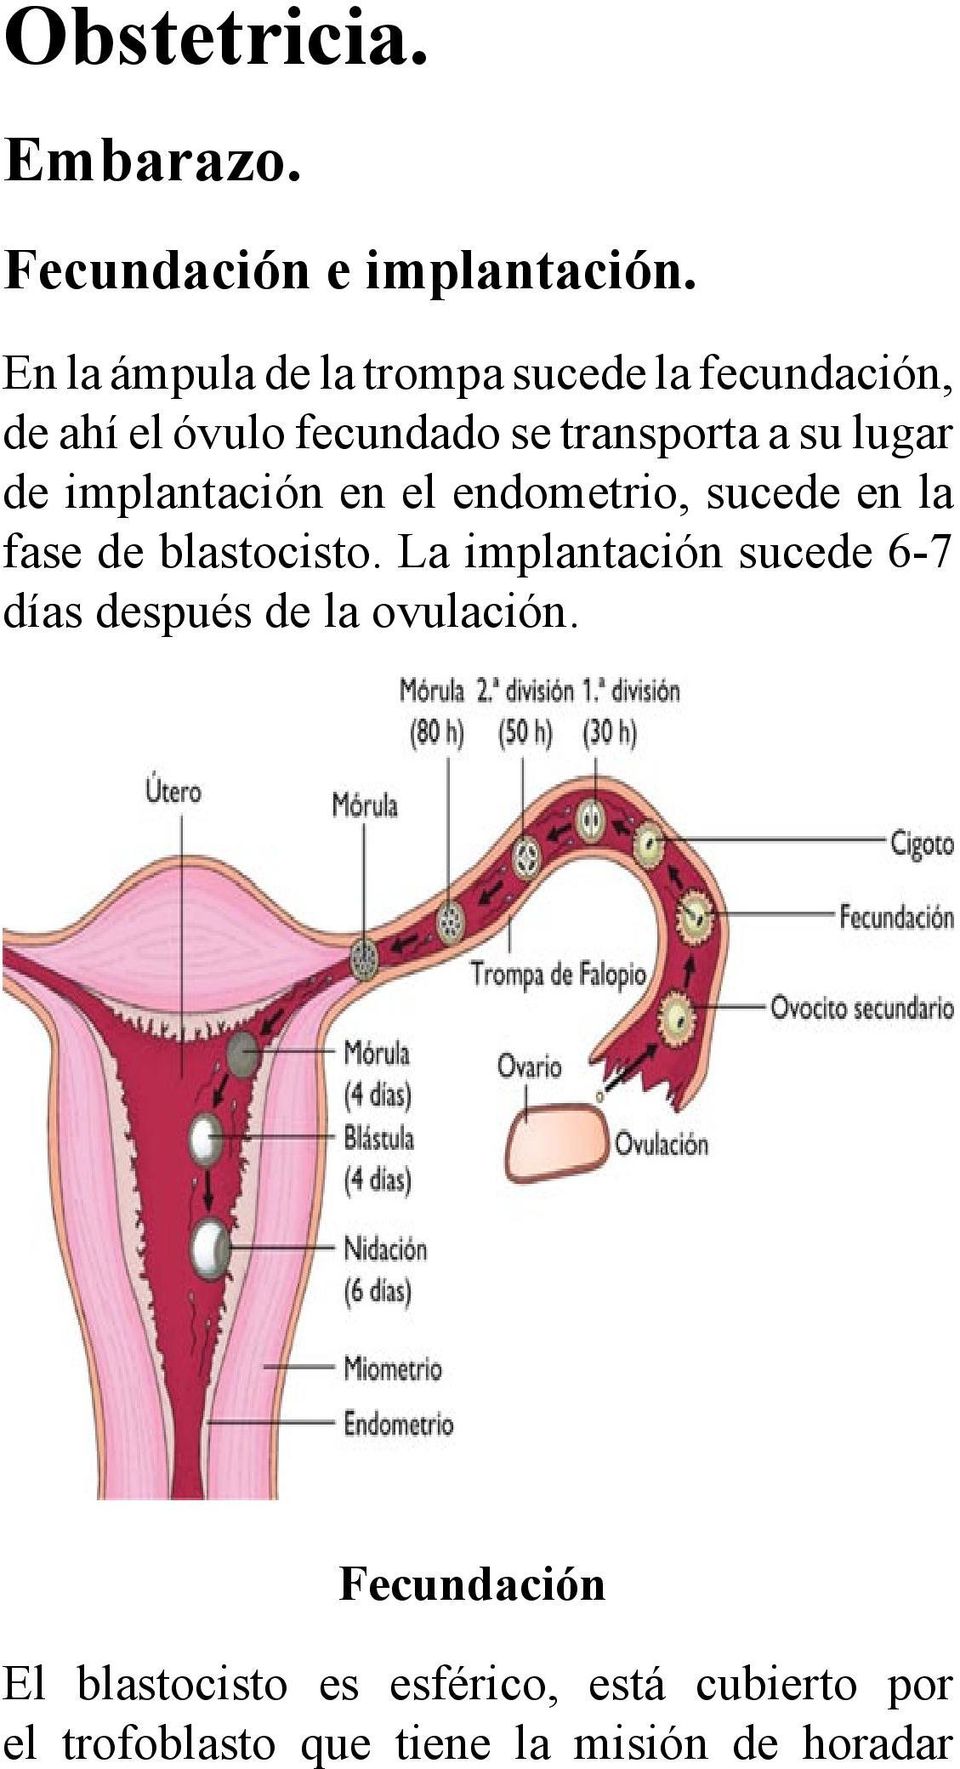 lugar de implantación en el endometrio, sucede en la fase de blastocisto.